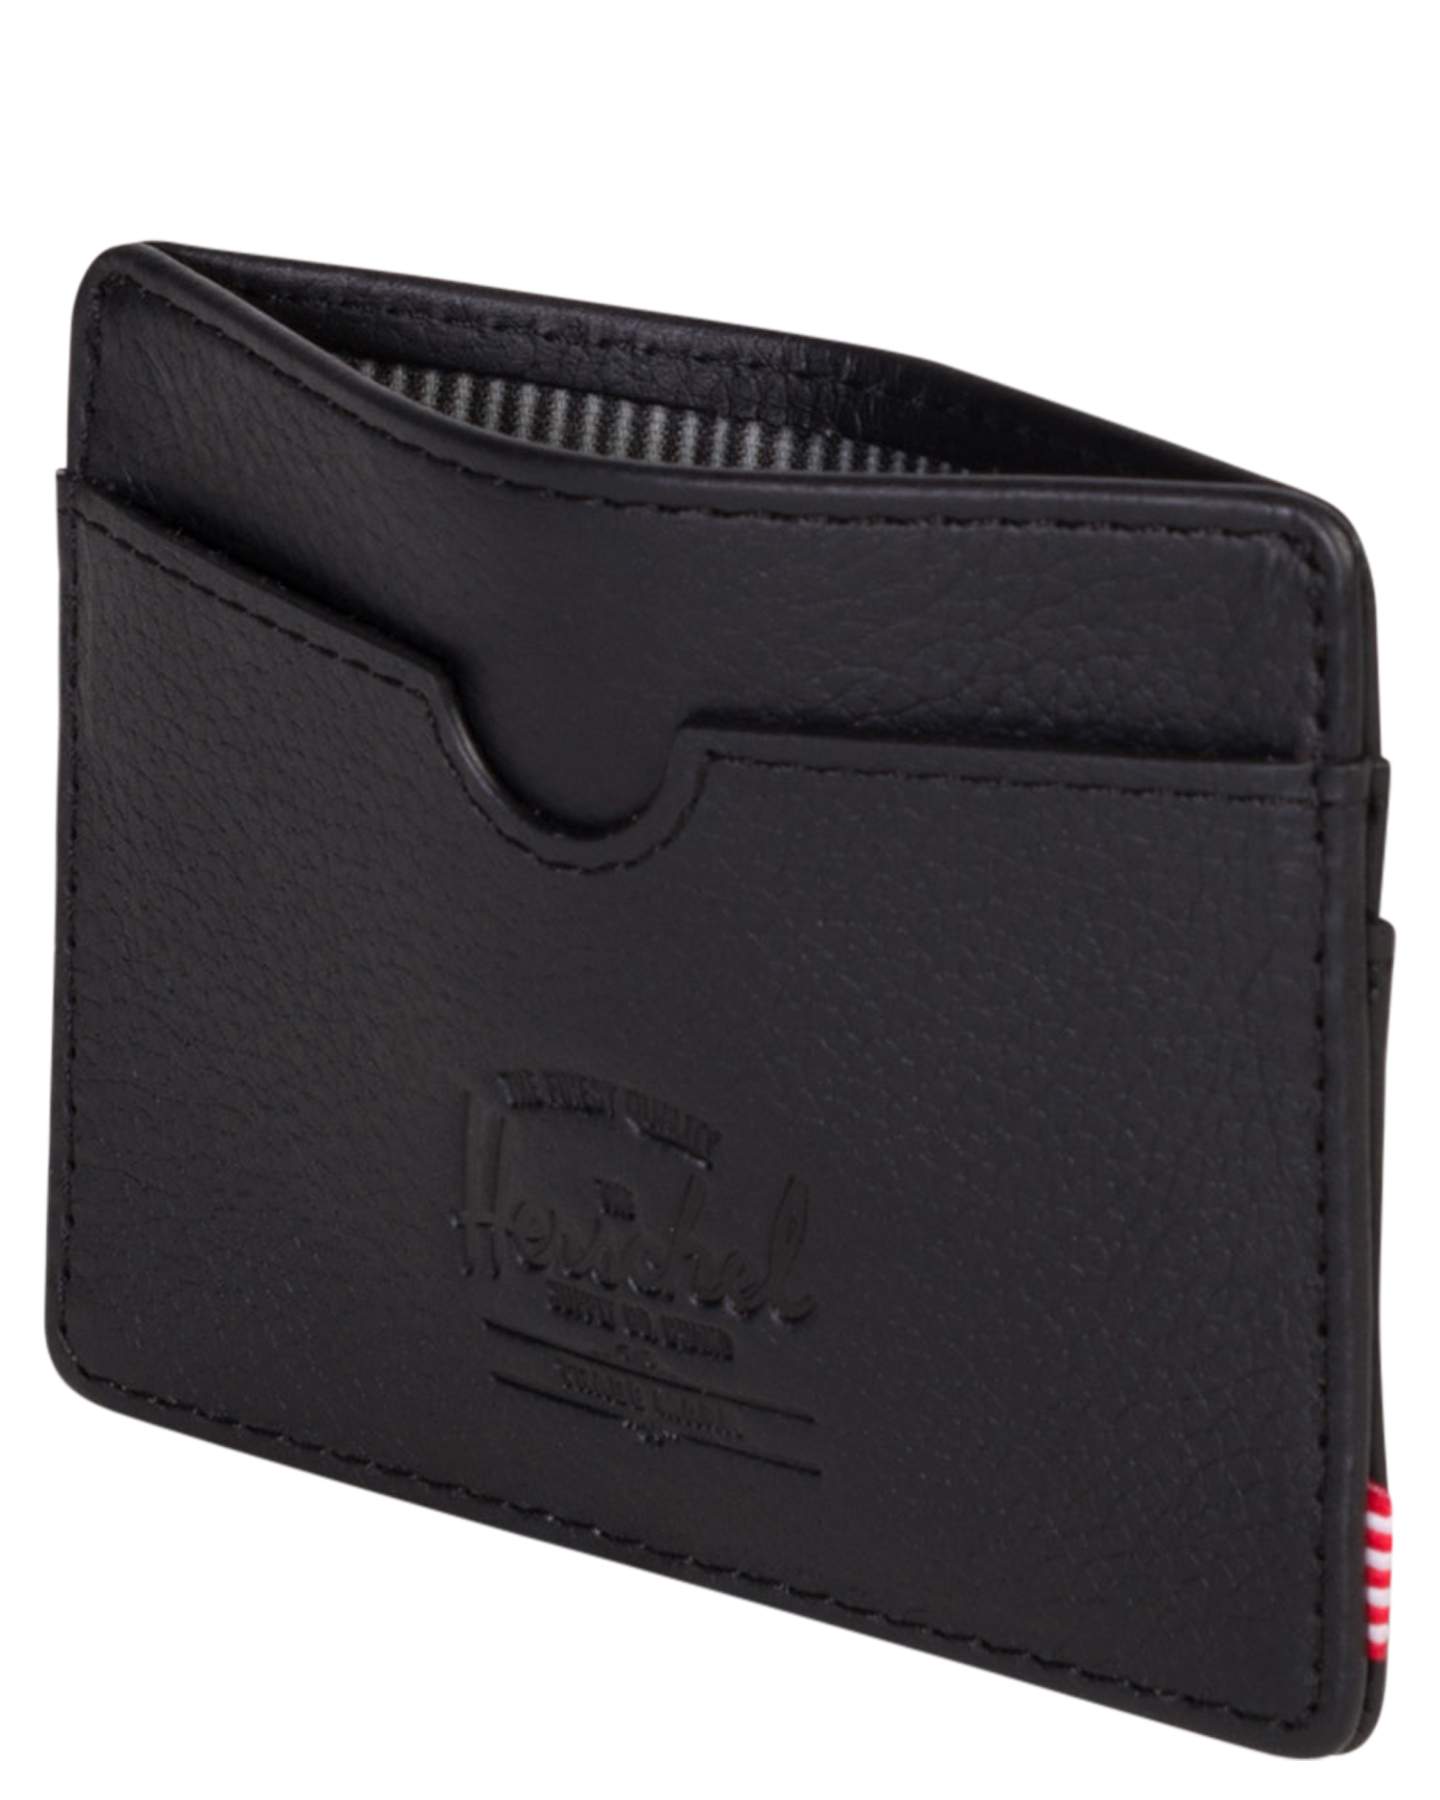 Herschel Supply Co Charlie Leather Rfid Wallet - Black Pebbled | SurfStitch